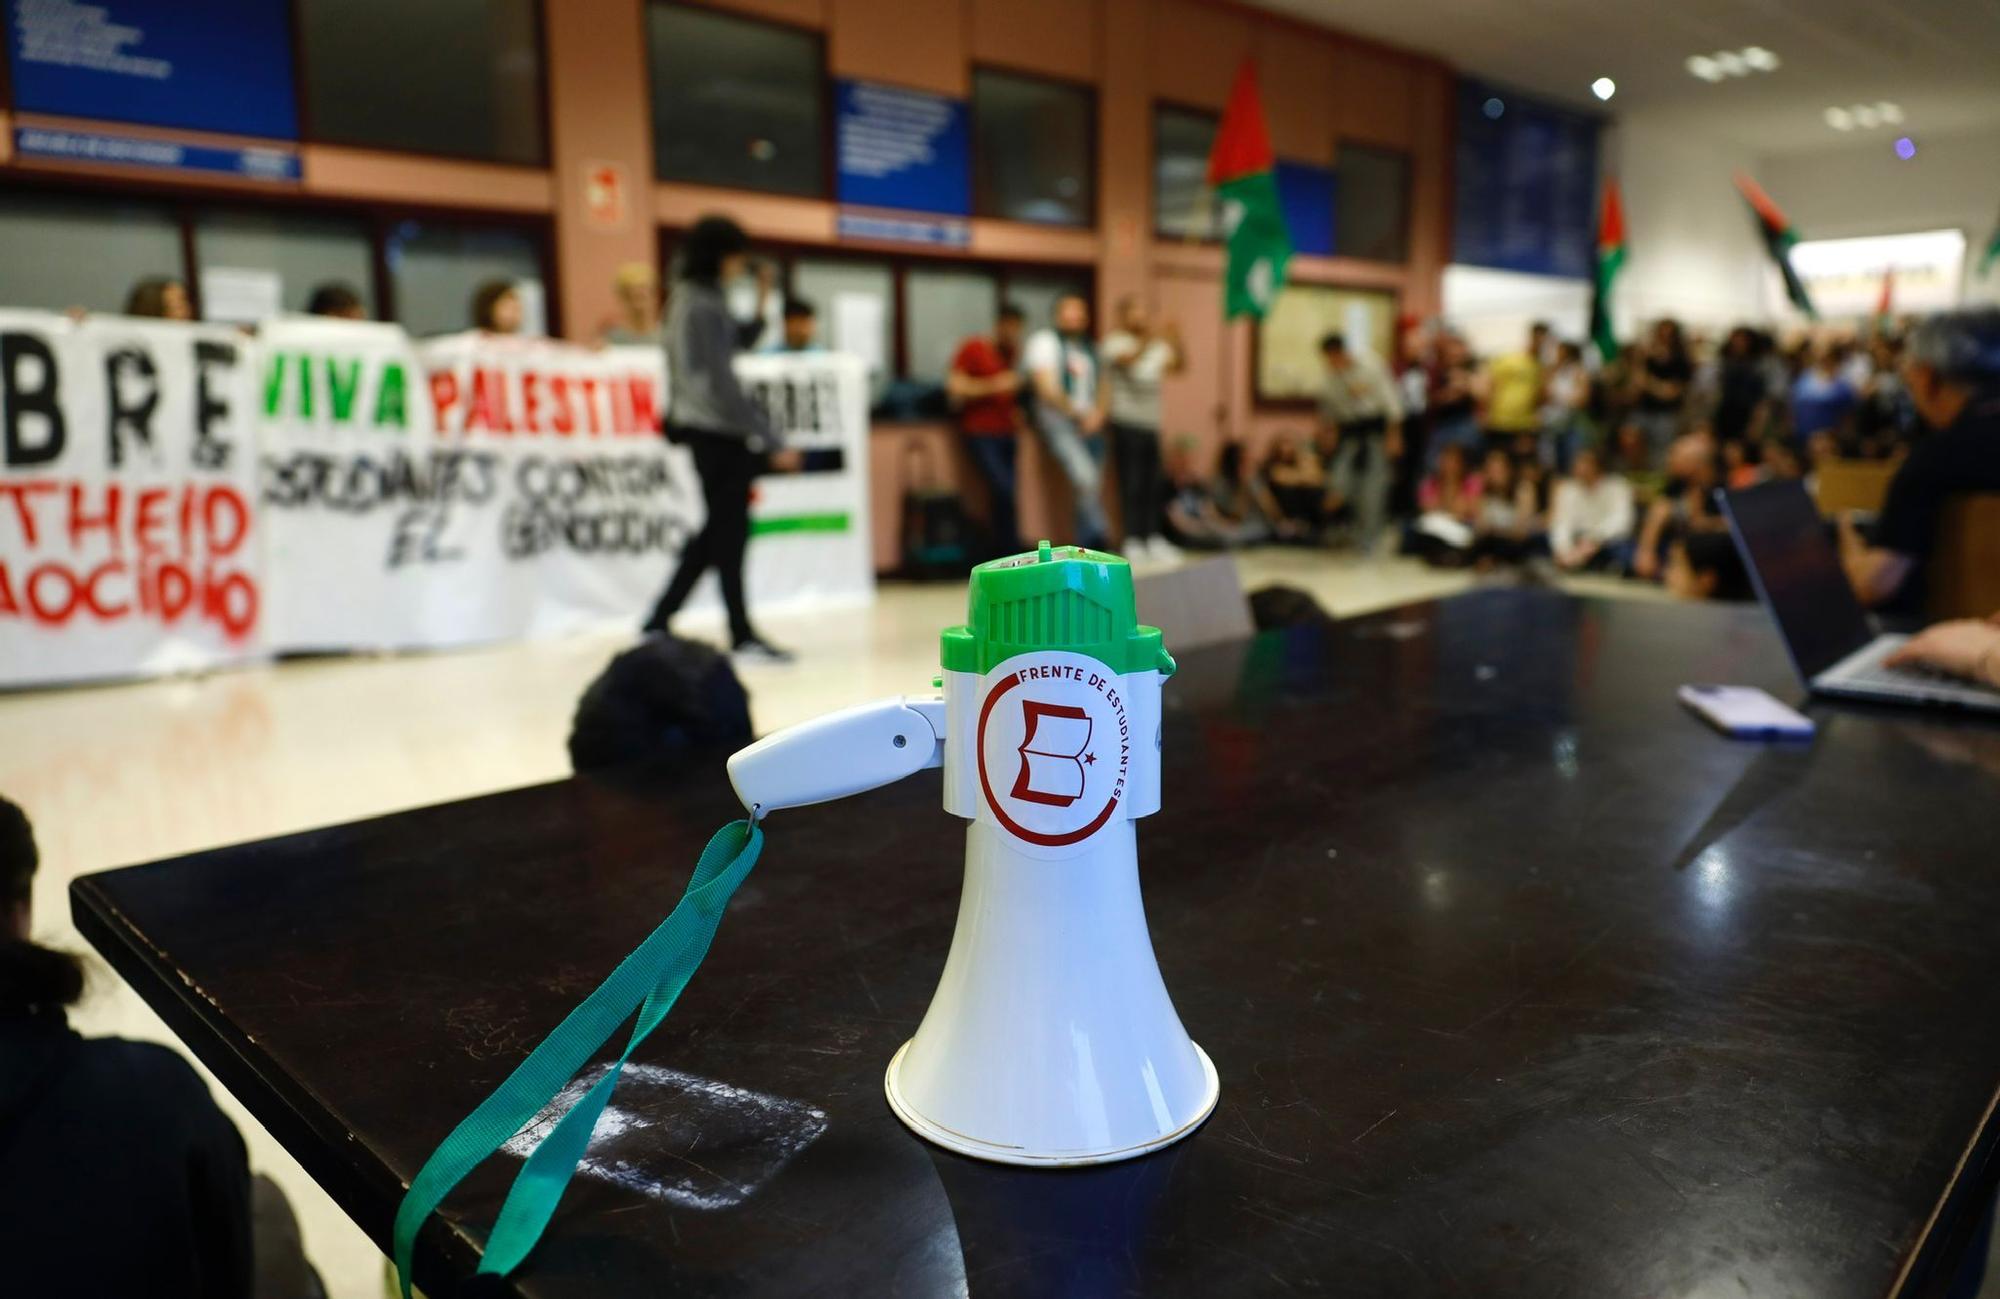 En imágenes | Decenas de estudiantes se encierran “de manera indefinida” en Interfacultades en apoyo a Palestina